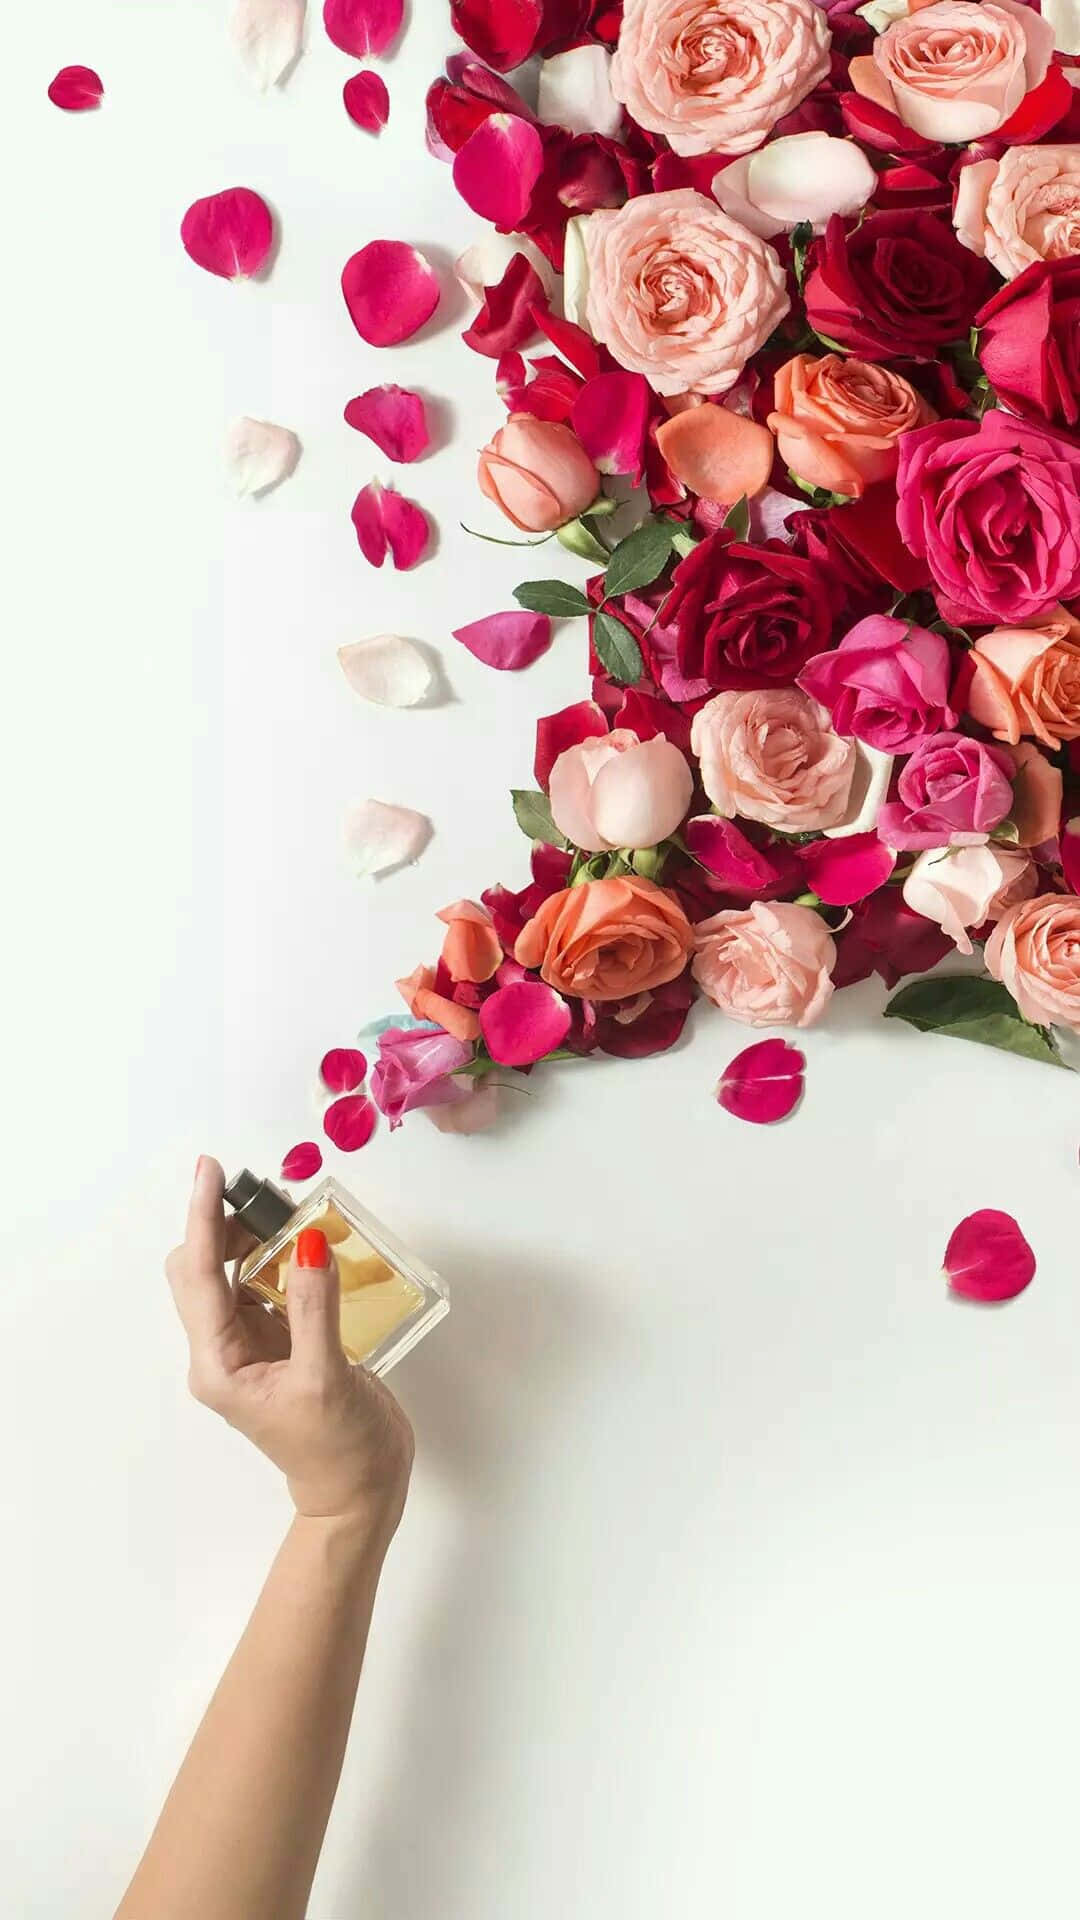 Floral Fragrance Delight Wallpaper